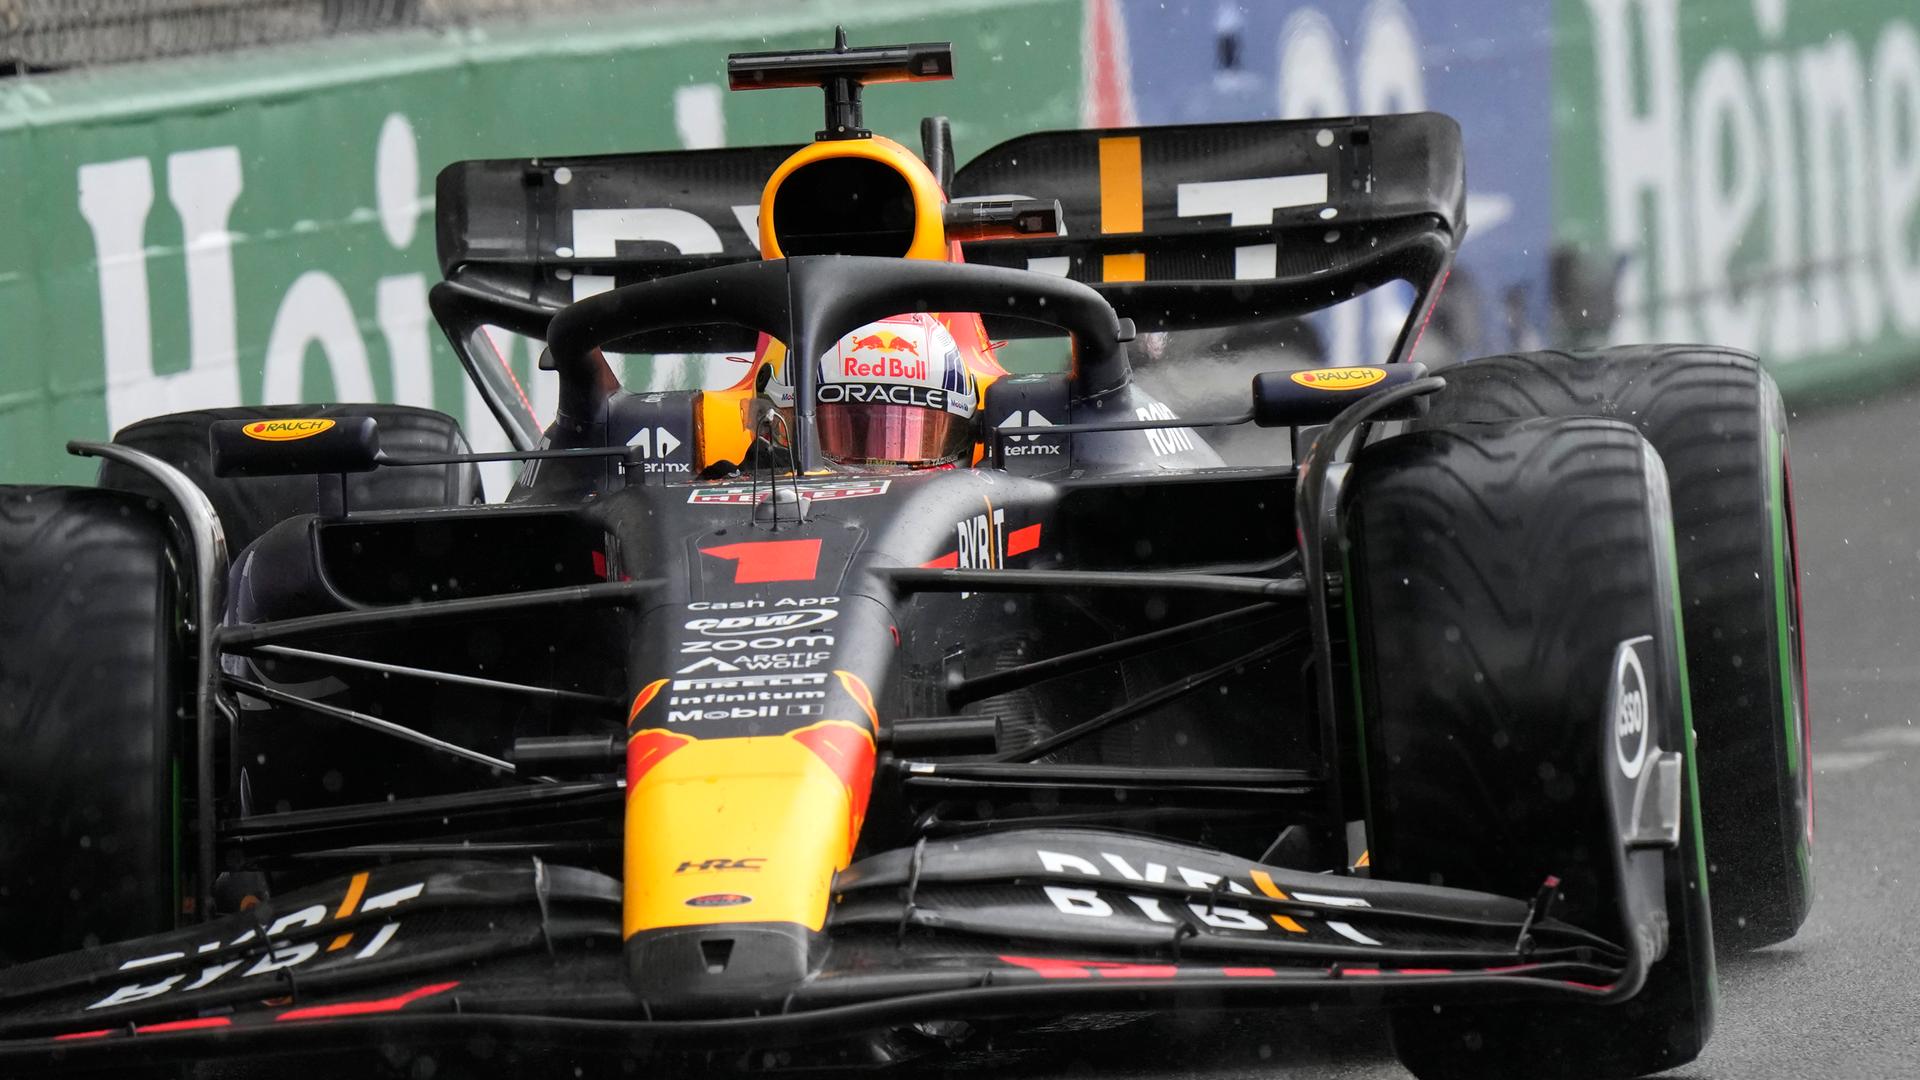 Formel 1-Pilot Max Verstappen steuert sein Auto während des Großen Preises von Monaco auf der Rennstrecke.